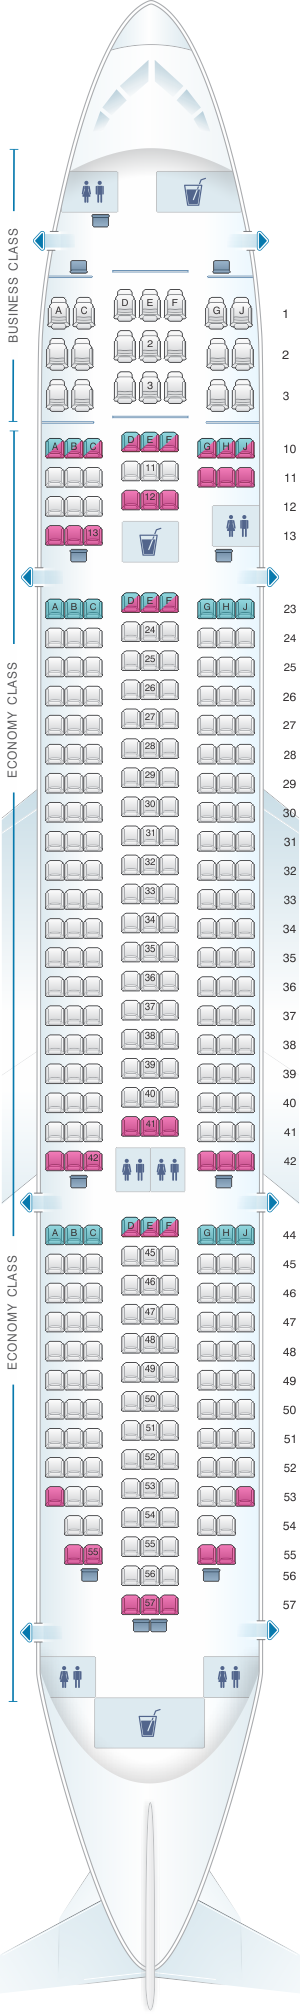 boeing 787 8 dreamliner seating